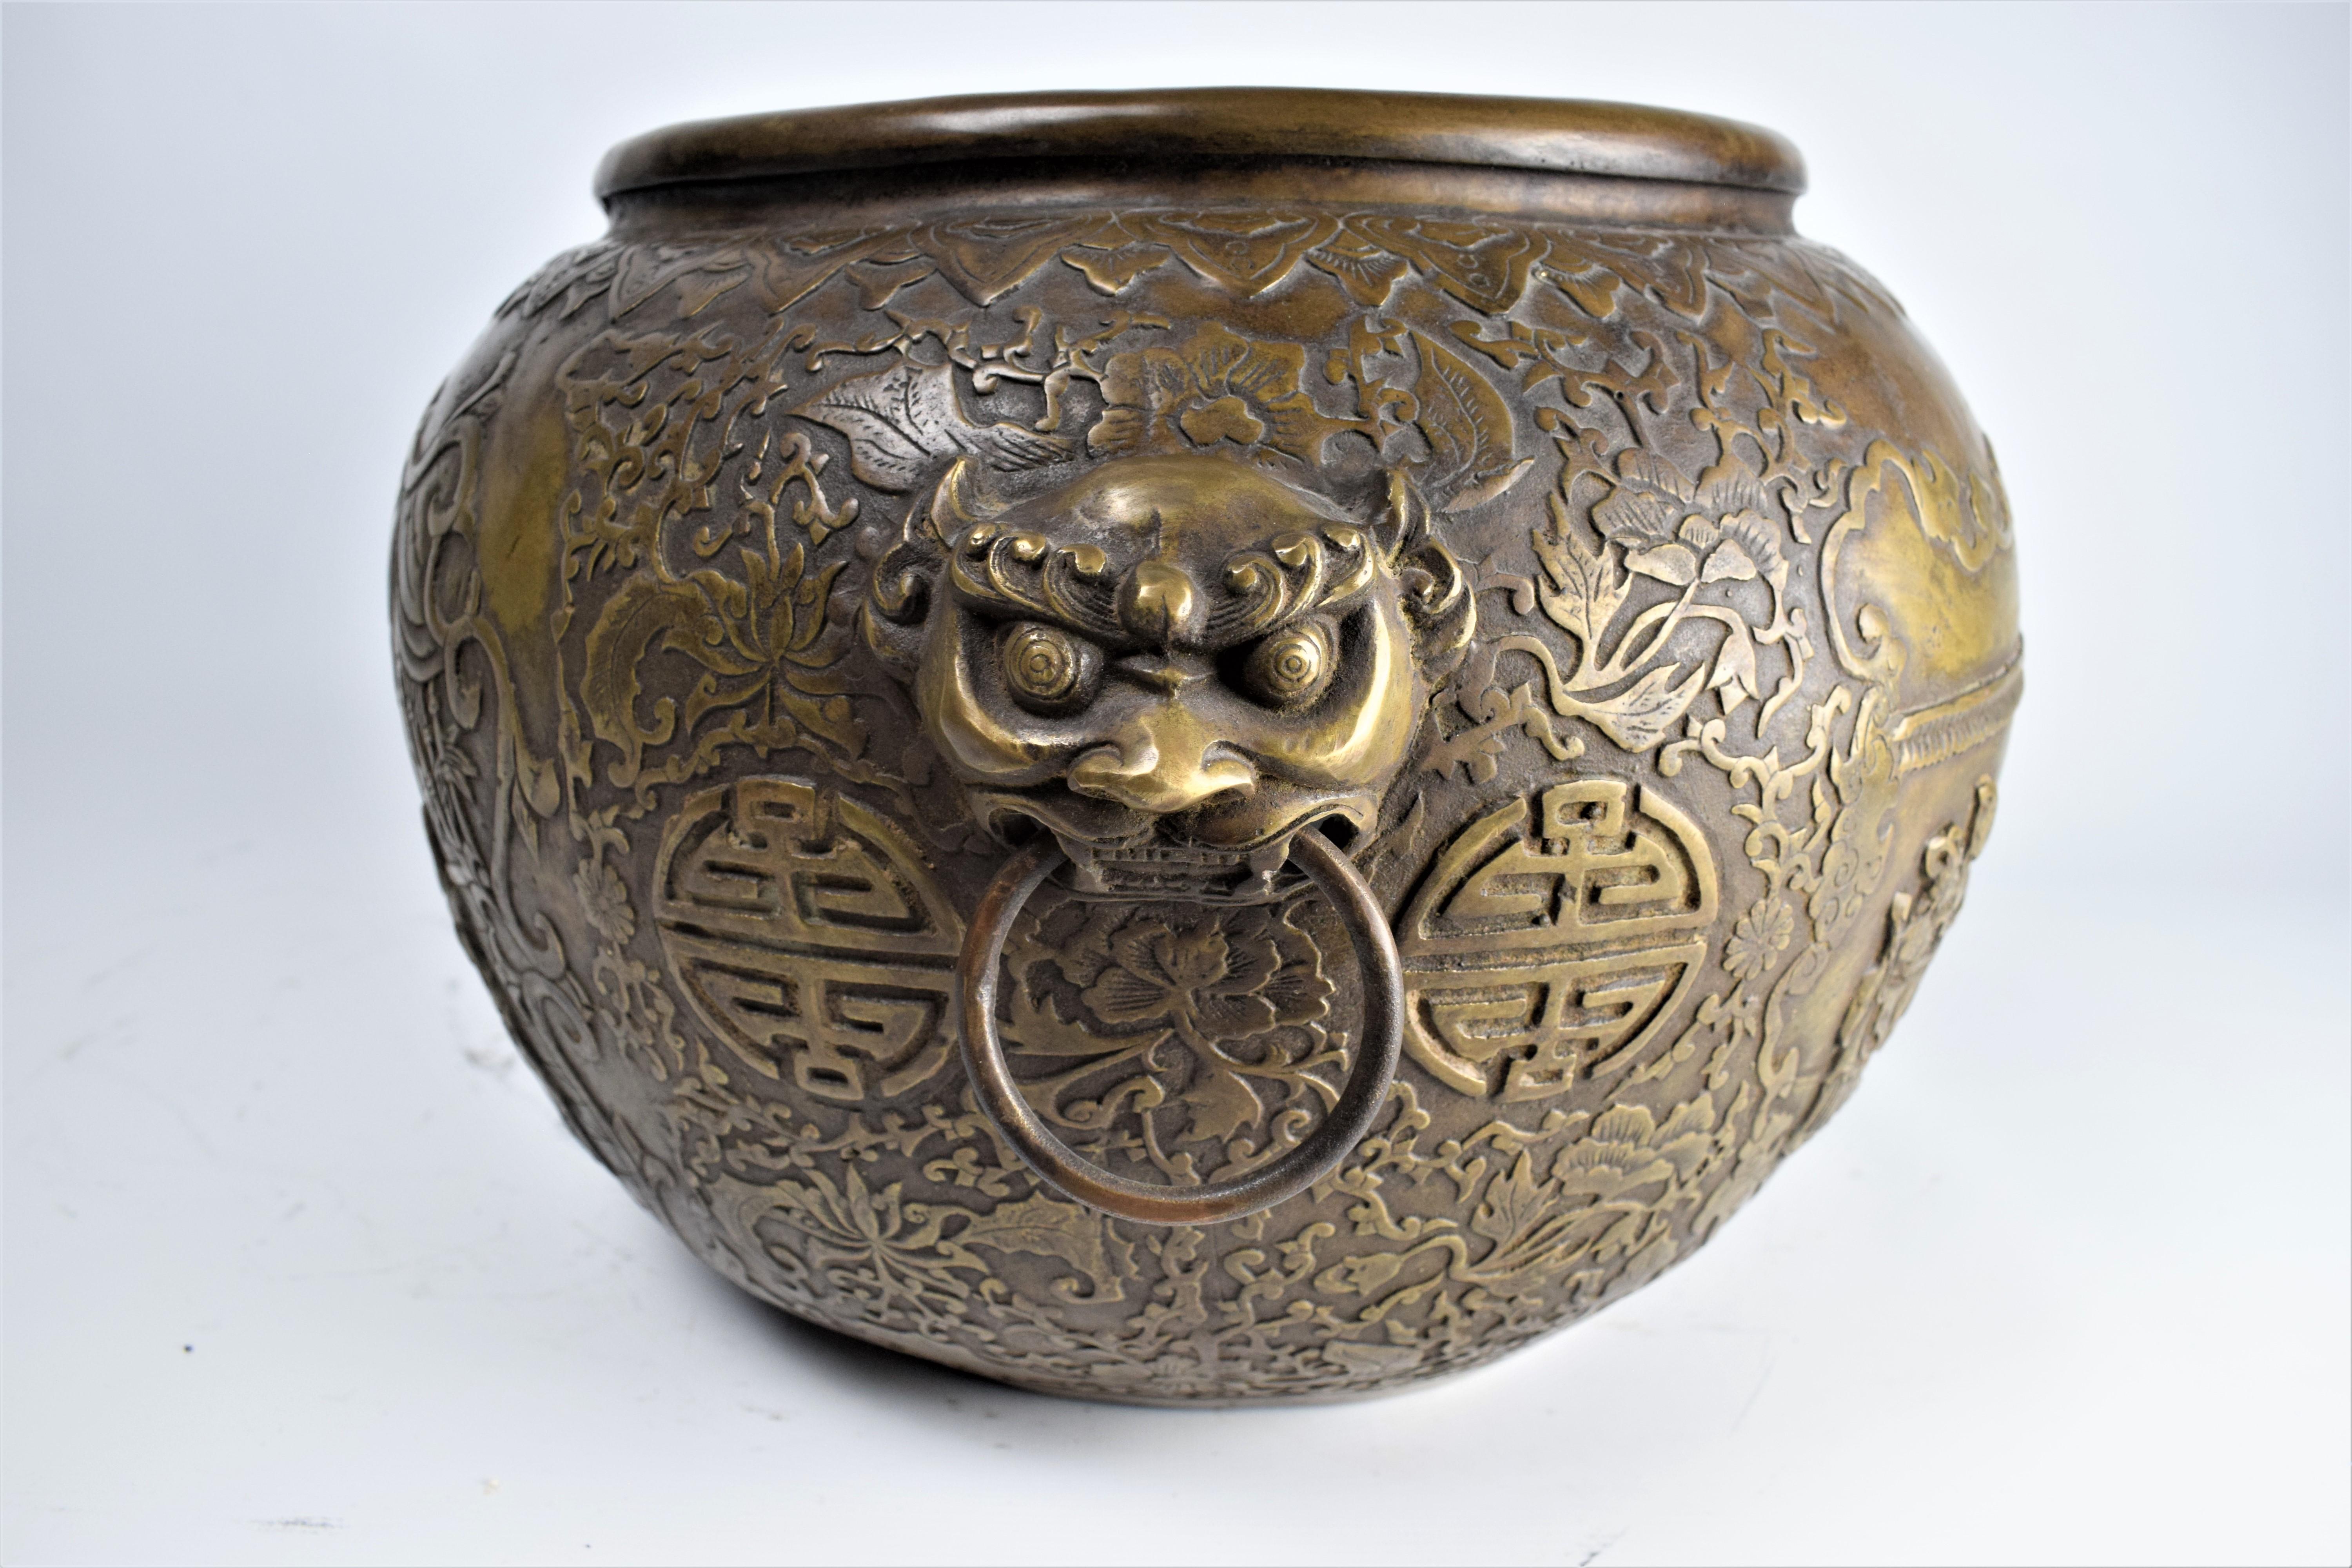 Bol en bronze doré, dynastie Qing, période Qianlong.

Ce magnifique bol présente des scènes de la vie quotidienne dans la cour d'un palais et est abondamment orné tout autour de décors floraux et végétaux. Les deux anses sont en forme de dragons